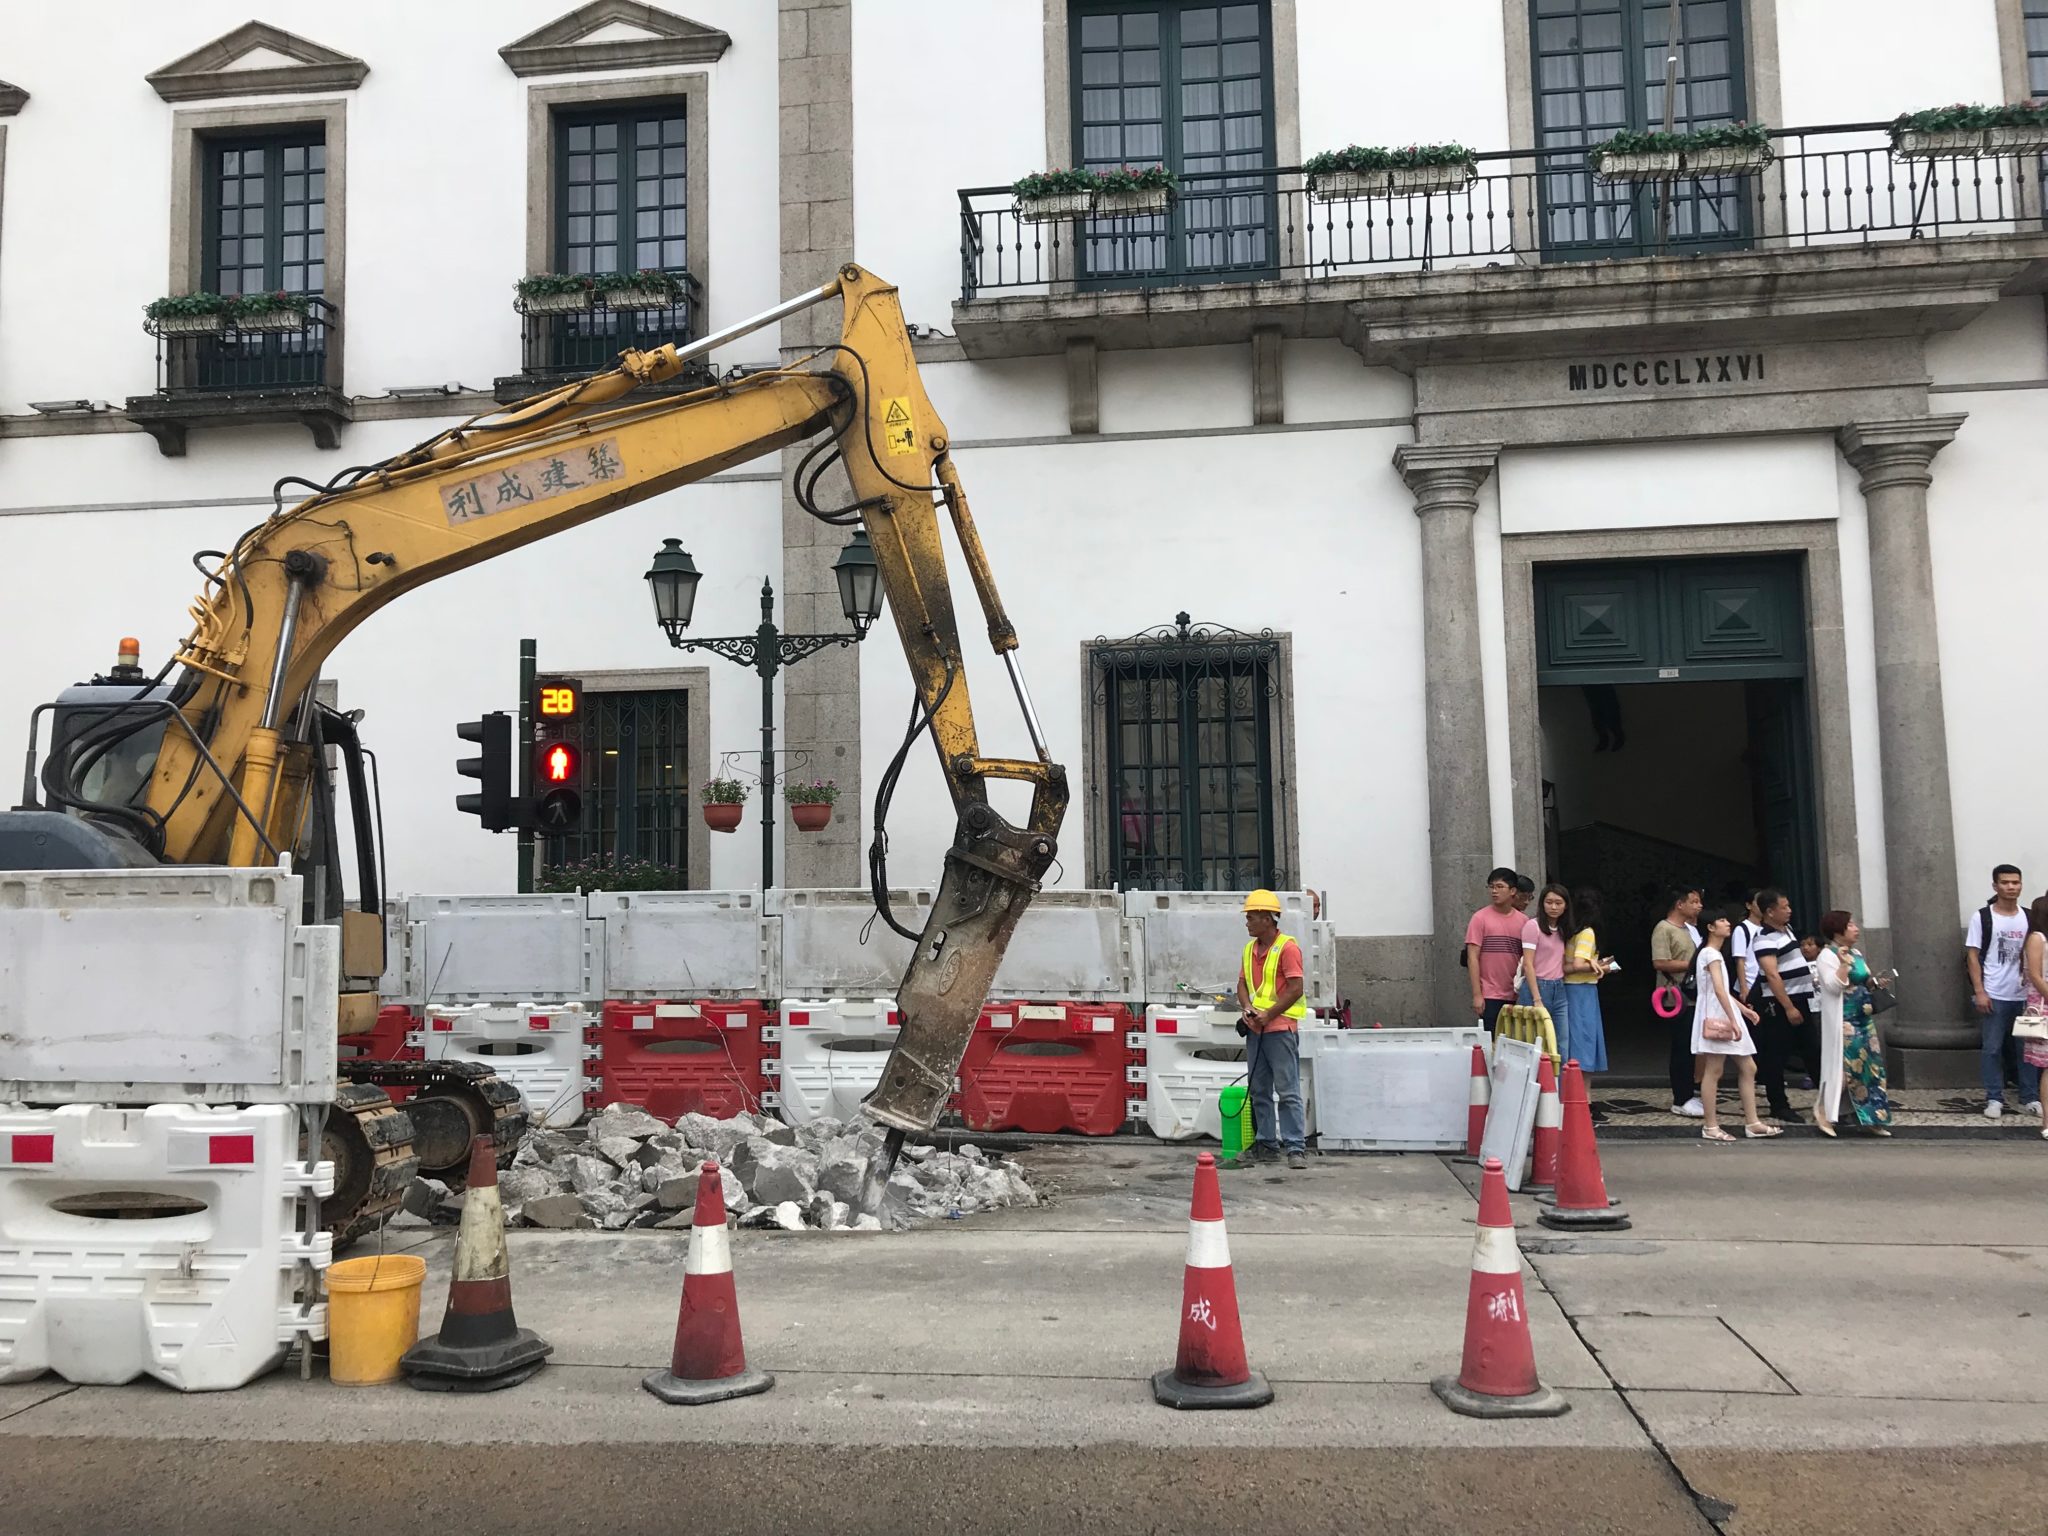 Obras | IAM atento à largura dos passeios no centro histórico